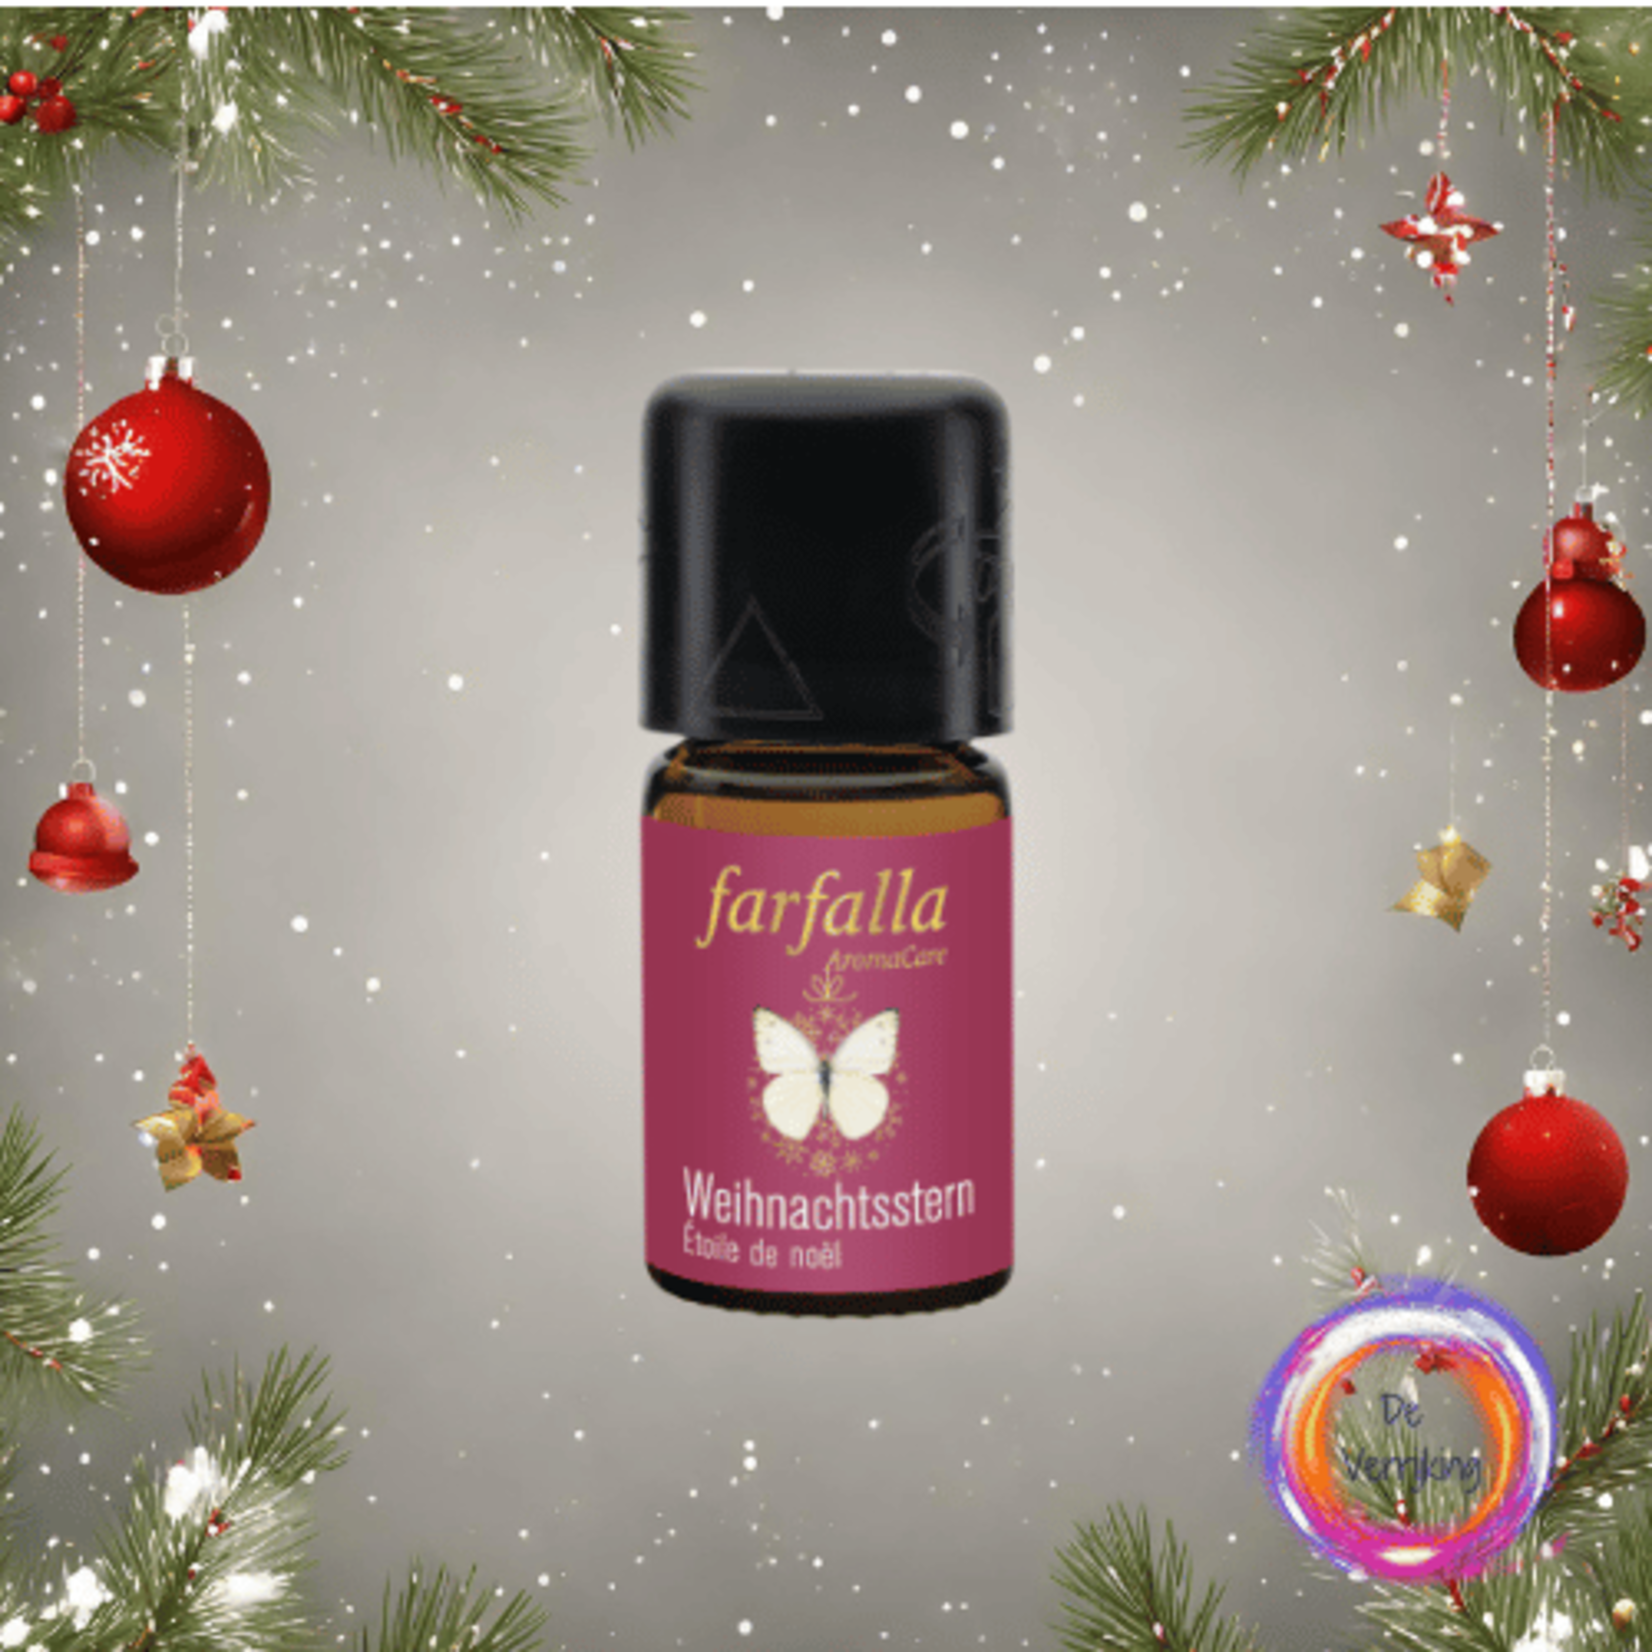 Farfalla Aromacare Weihnachtsstern | Kerstster bio 5ml | Farfalla